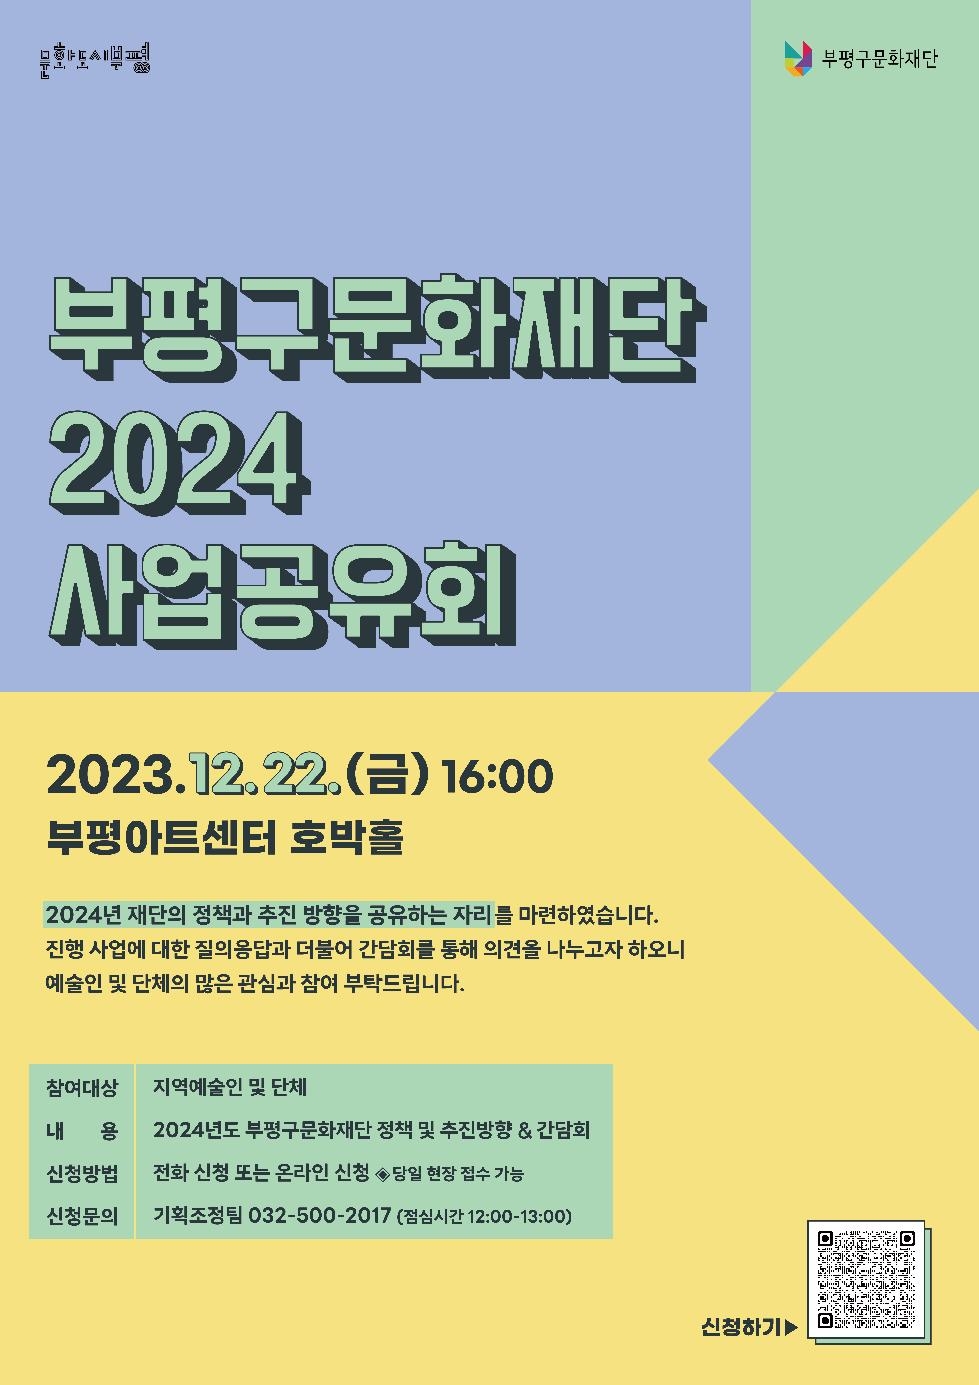 인천 부평구 문화재단, 2024년 사업공유회 참여자 모집